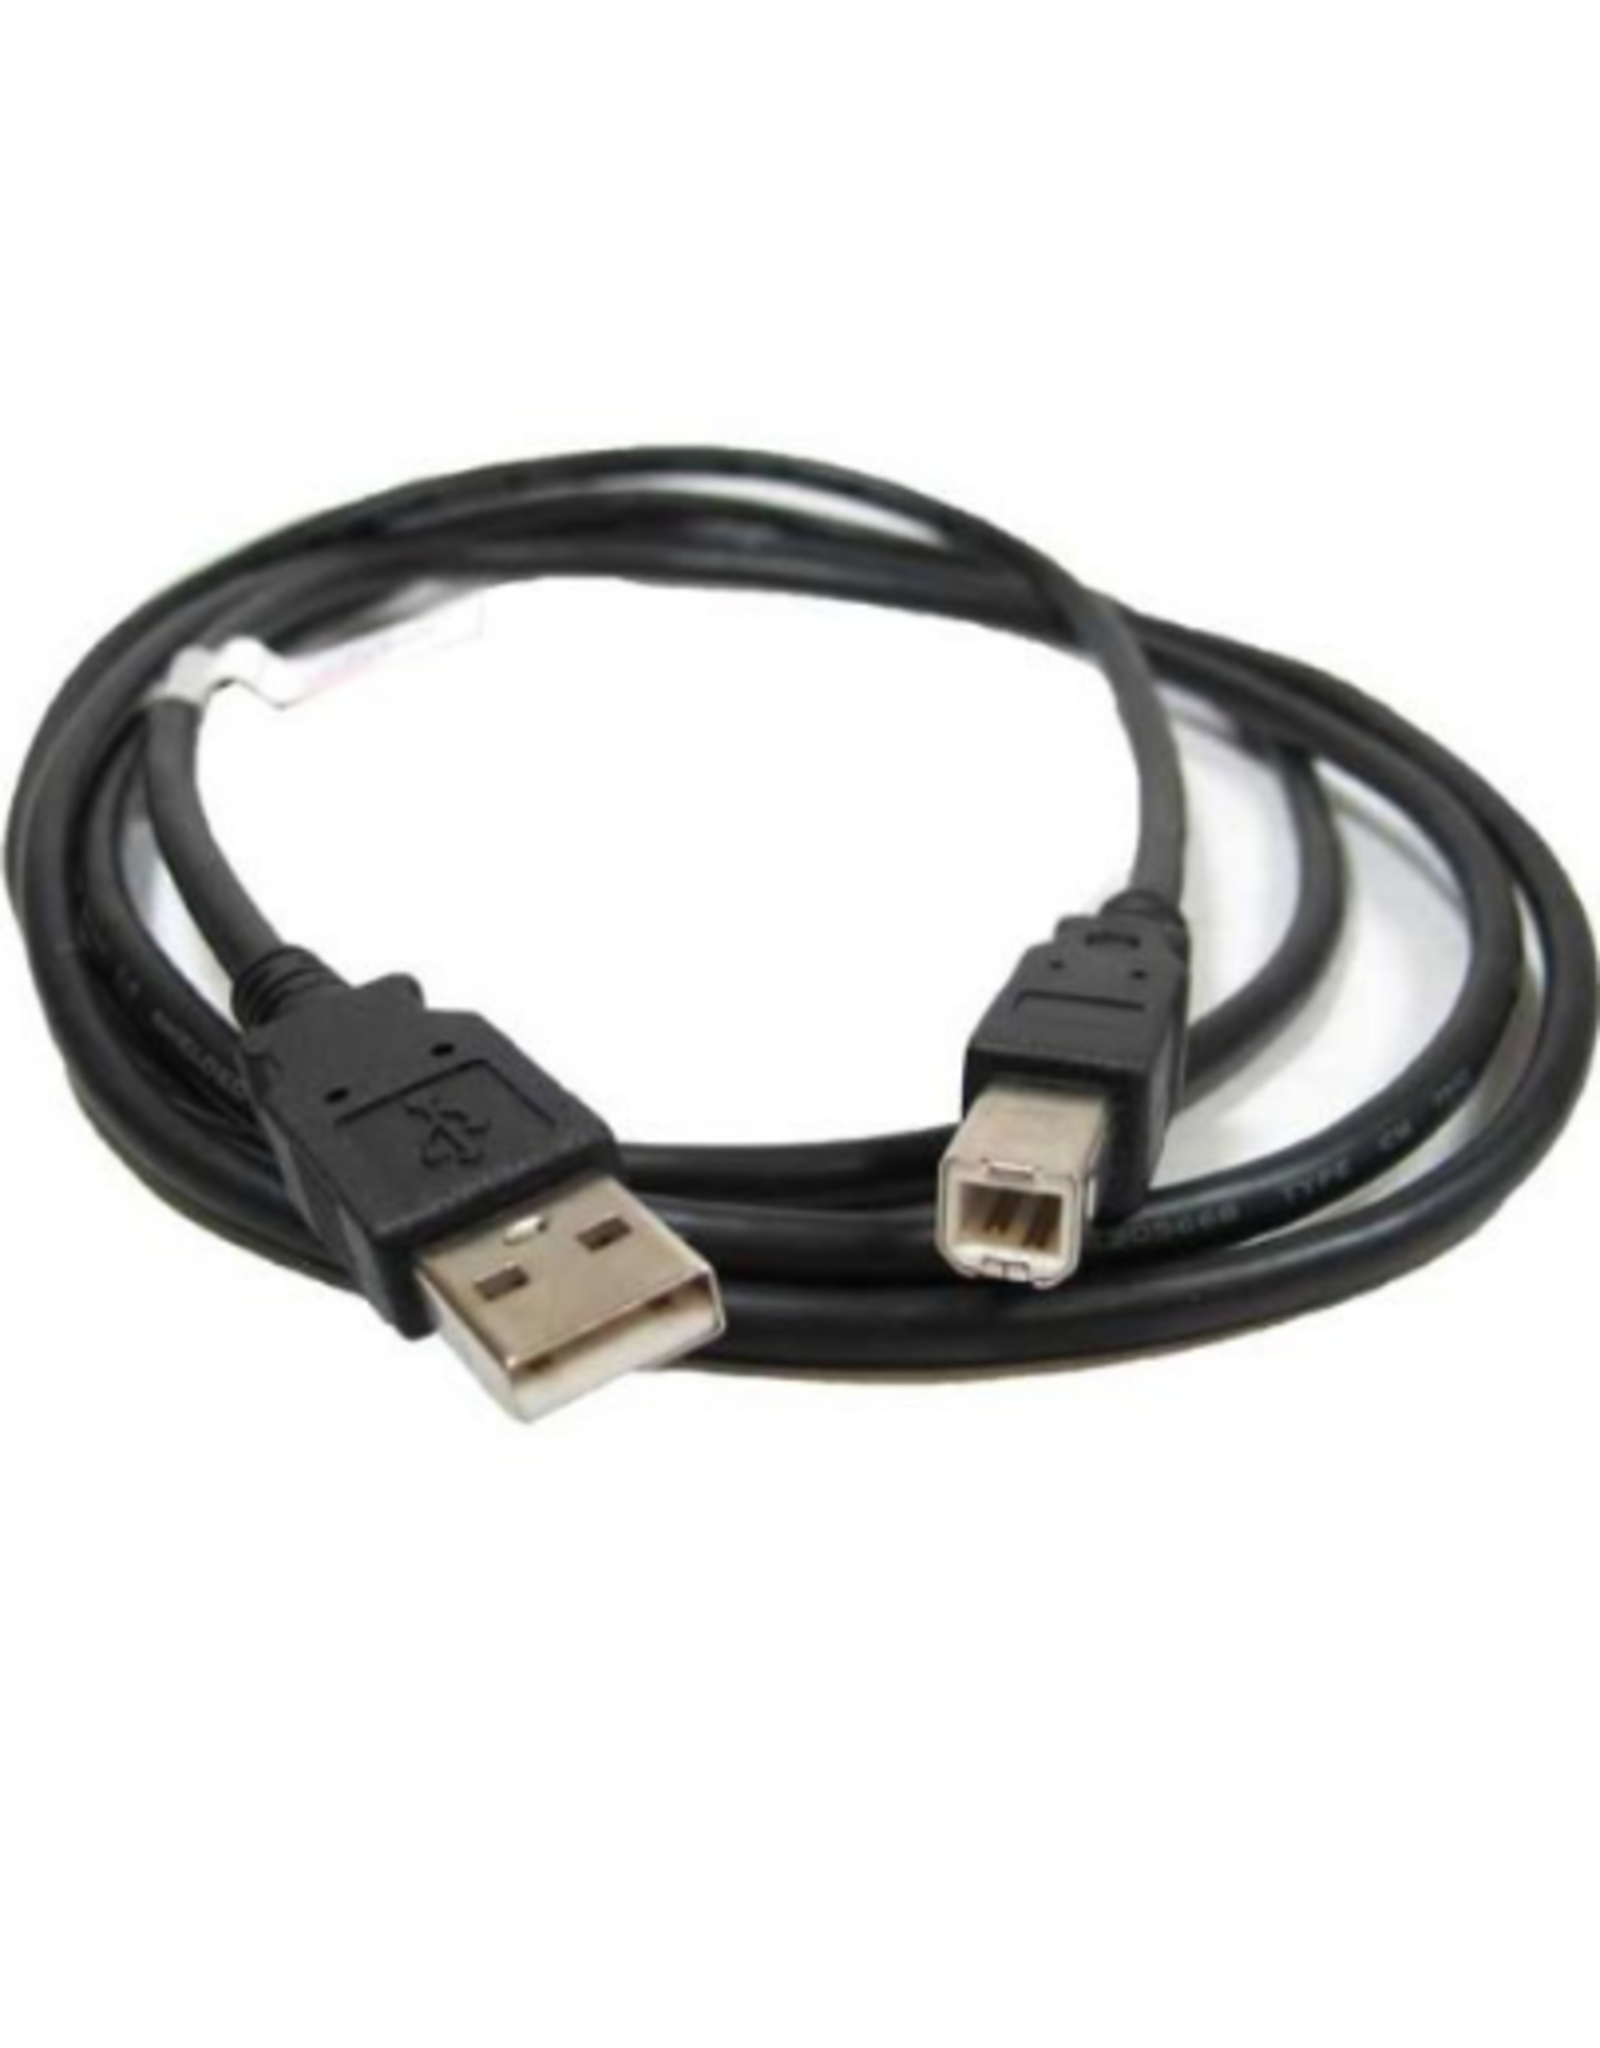 USB  Printer Cable  6 ft USB A to USB B